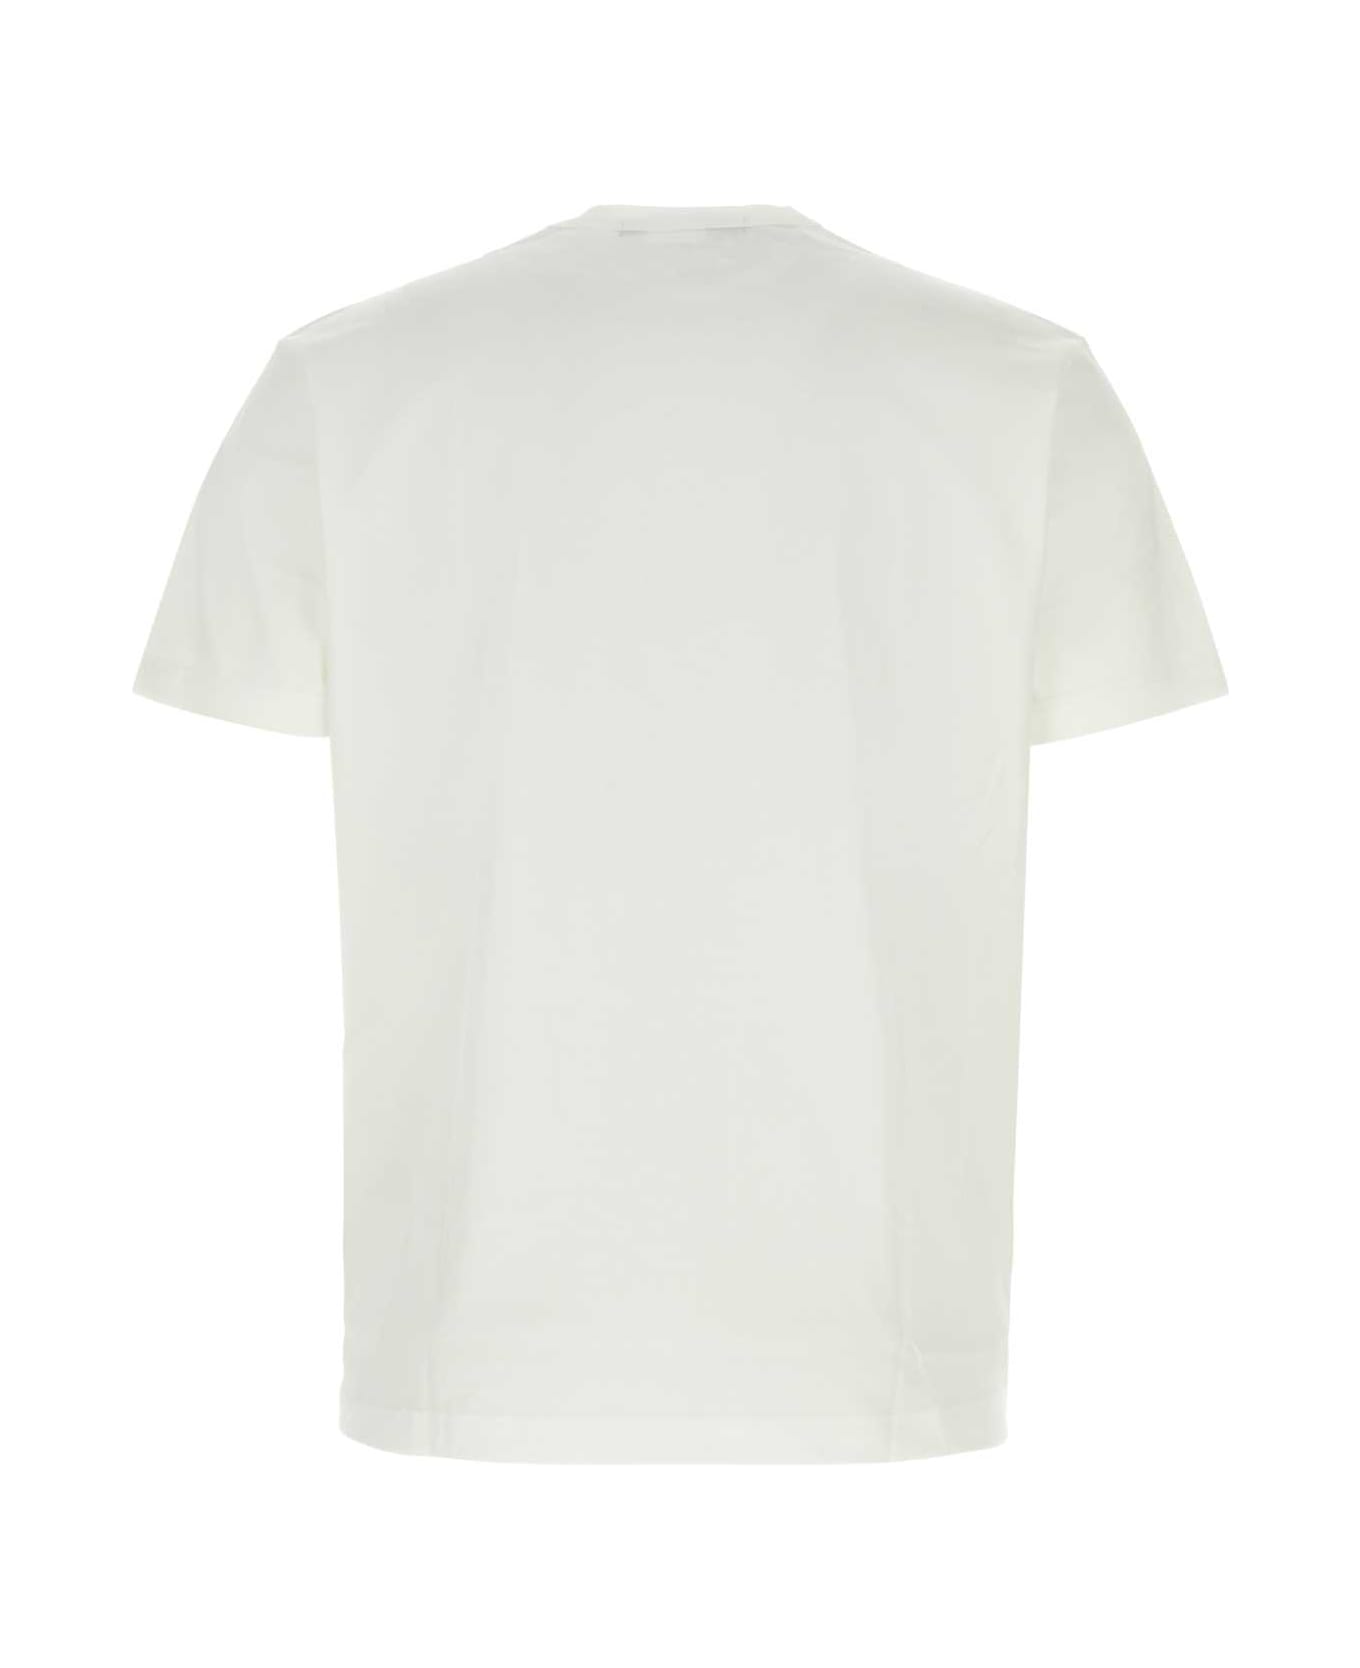 Junya Watanabe White Cotton T-shirt - WHITEBLURD シャツ